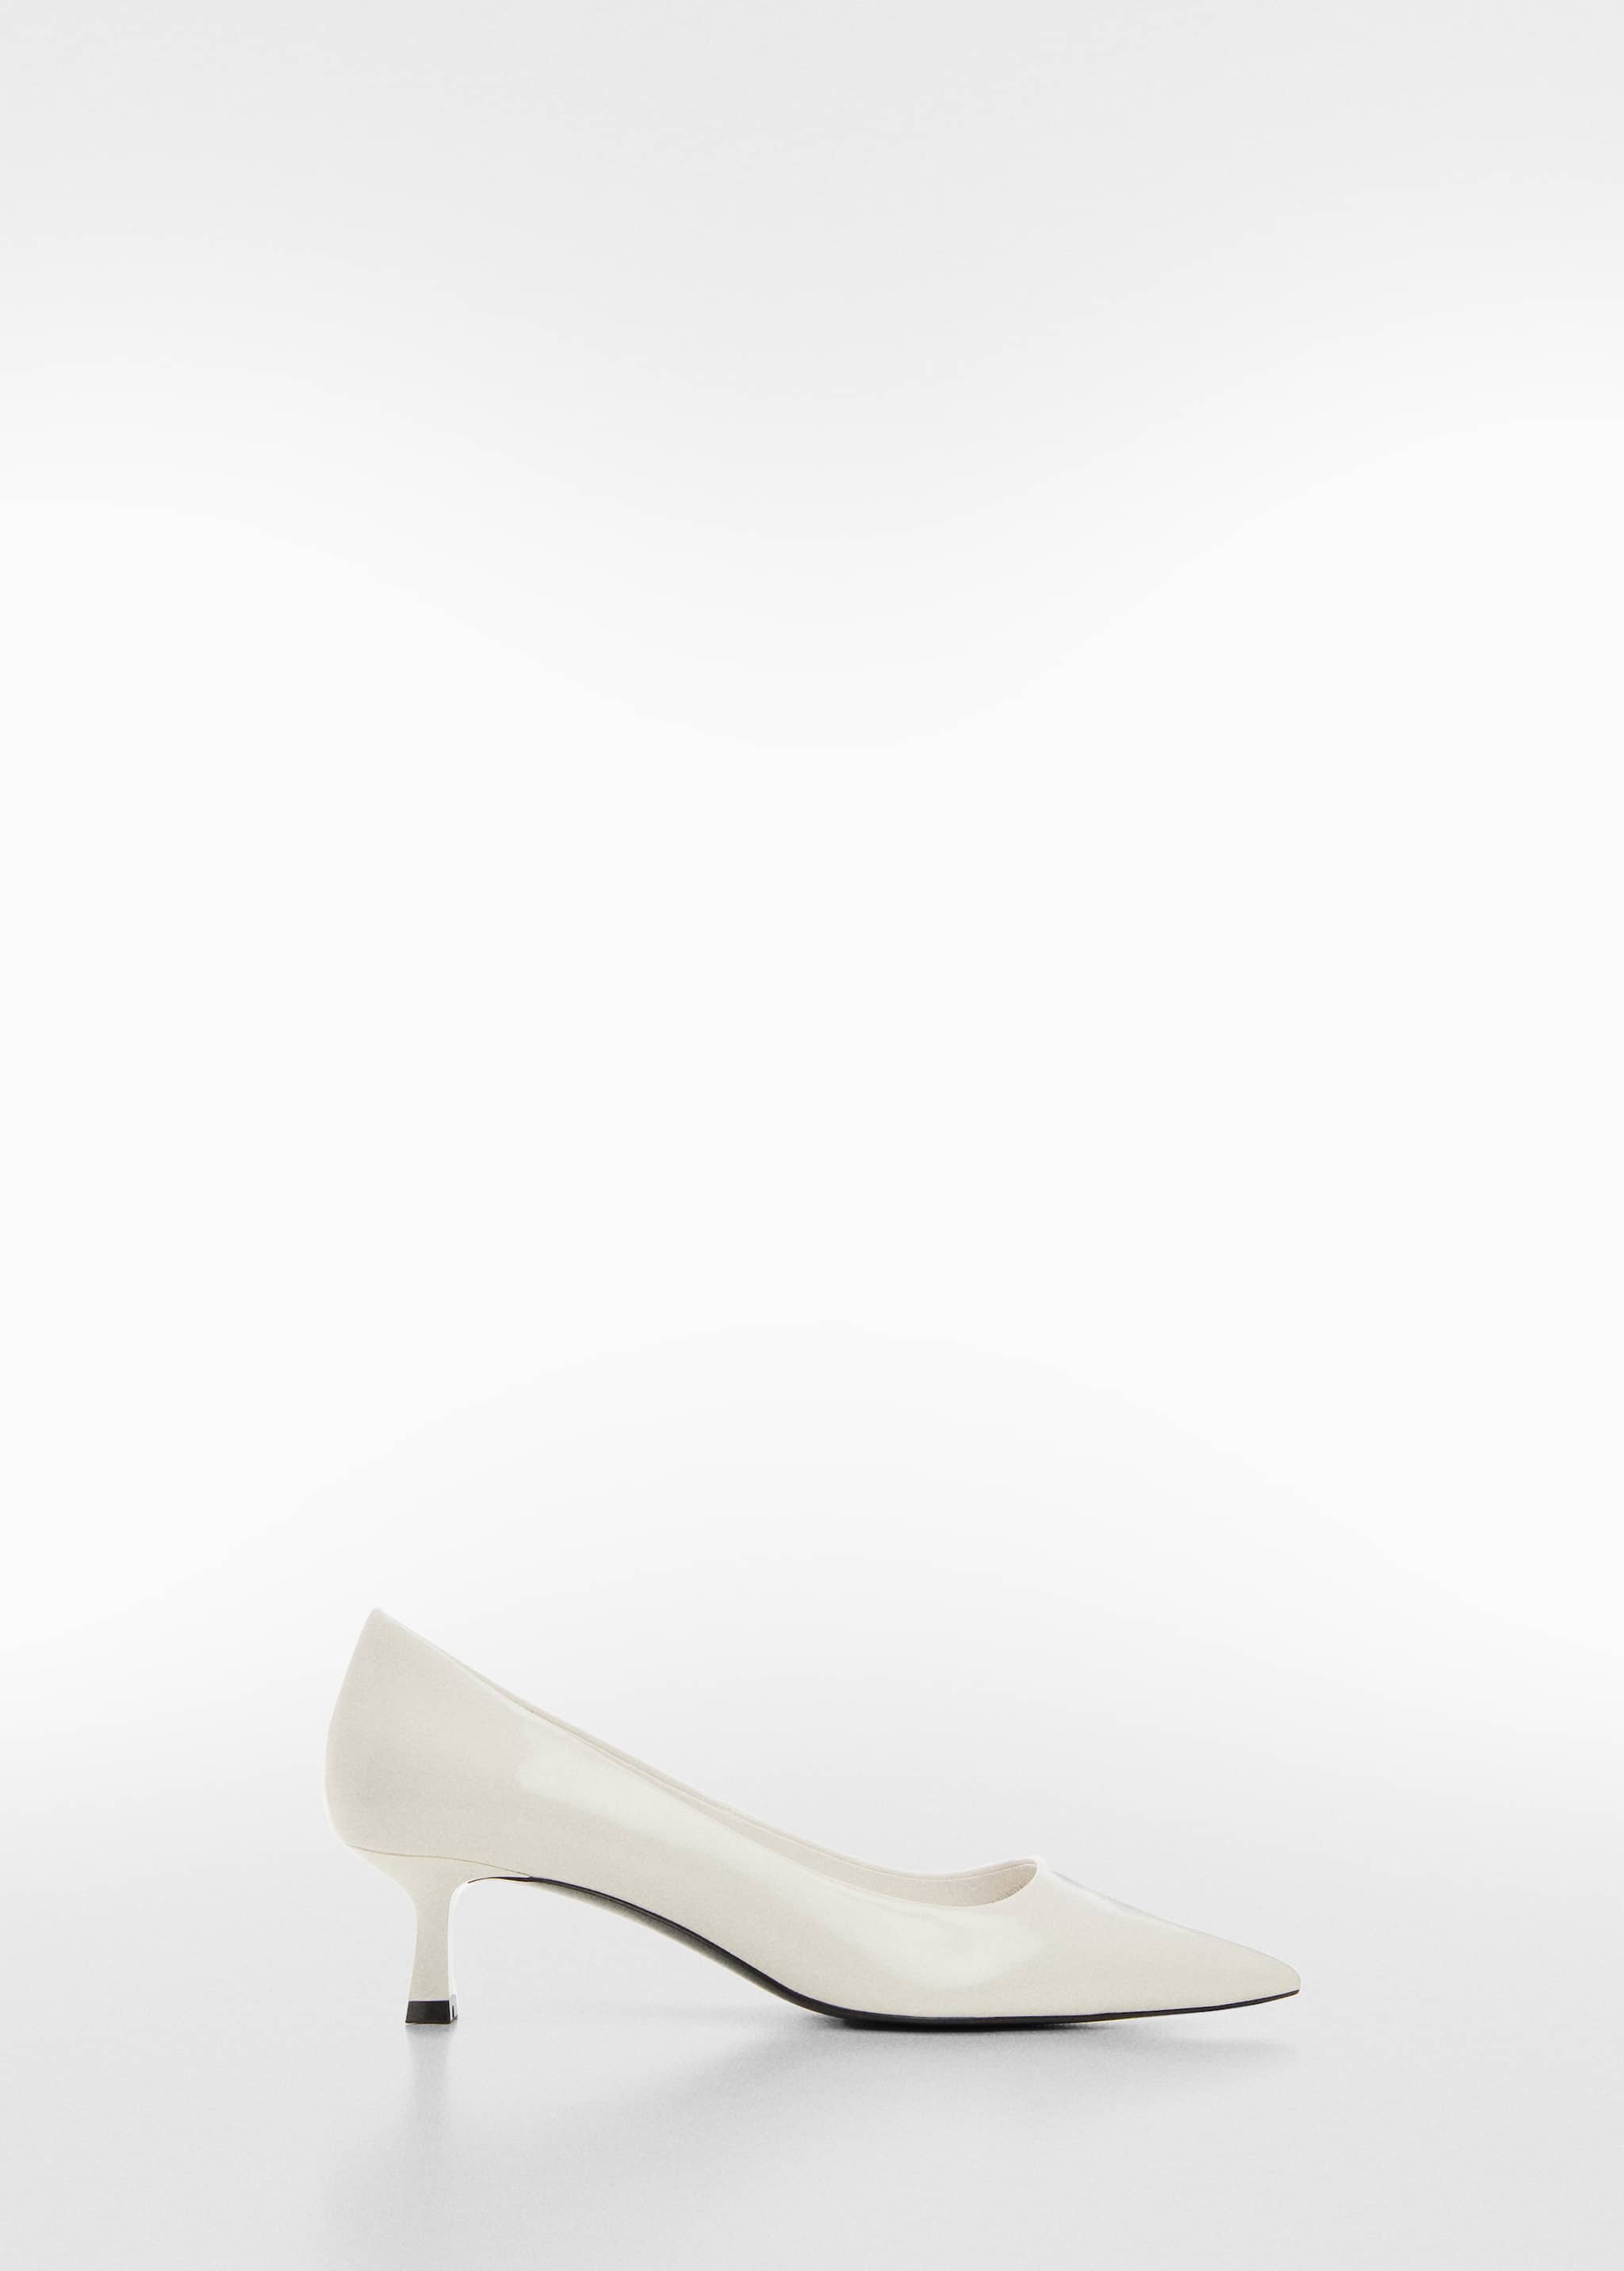 Zapato tacón kitten - Artículo sin modelo